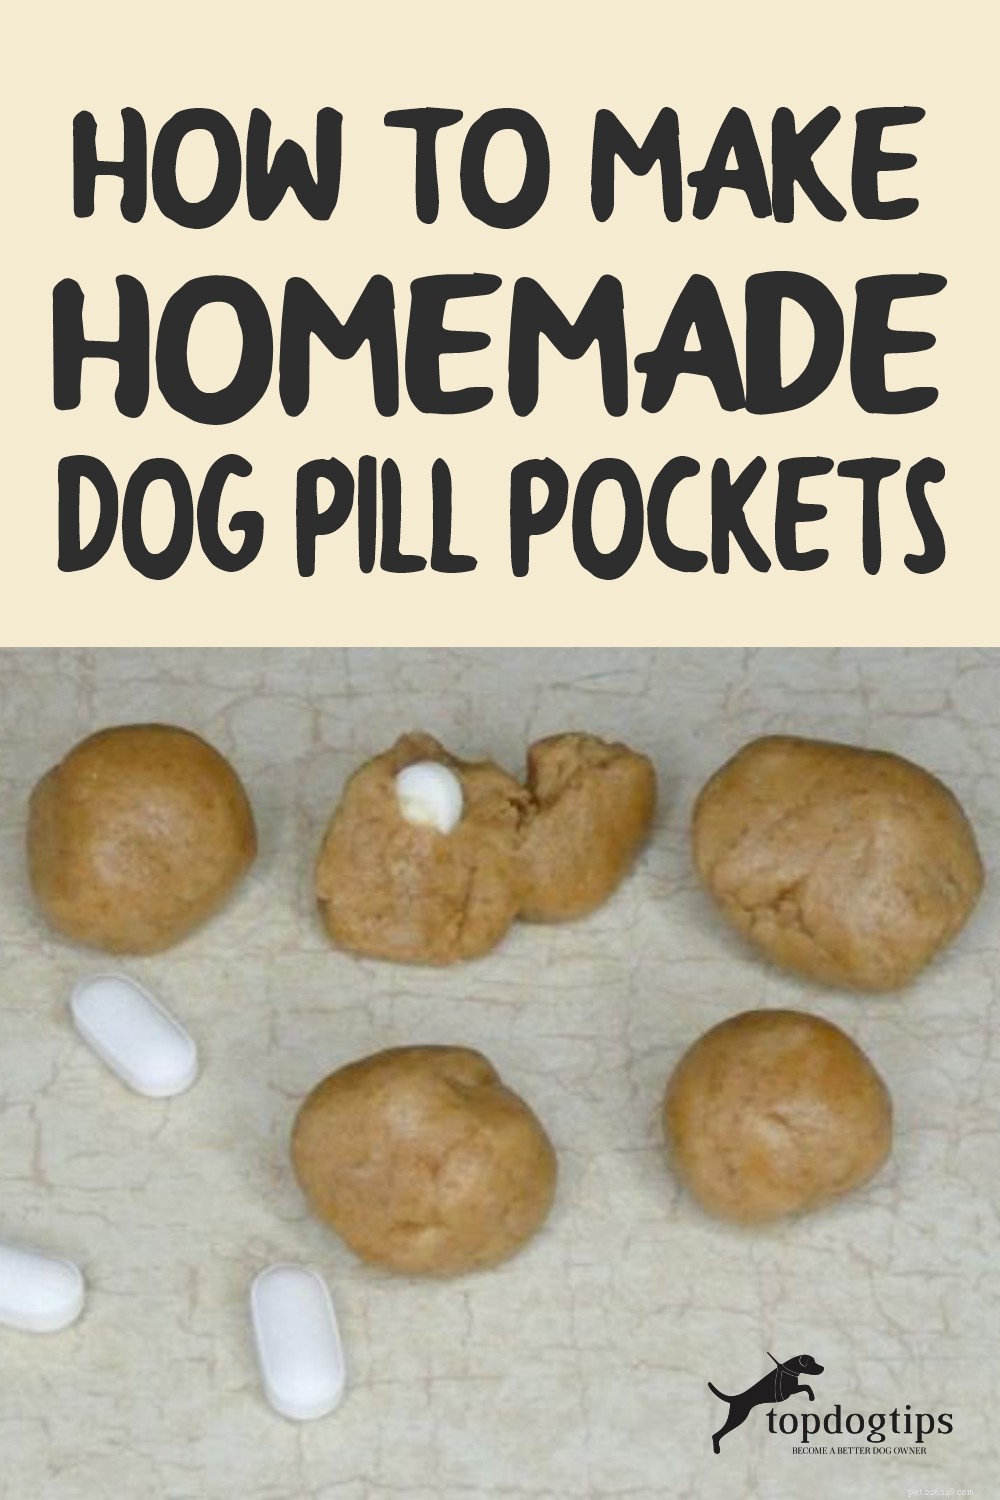 自家製の犬の丸薬ポケットを作る方法 